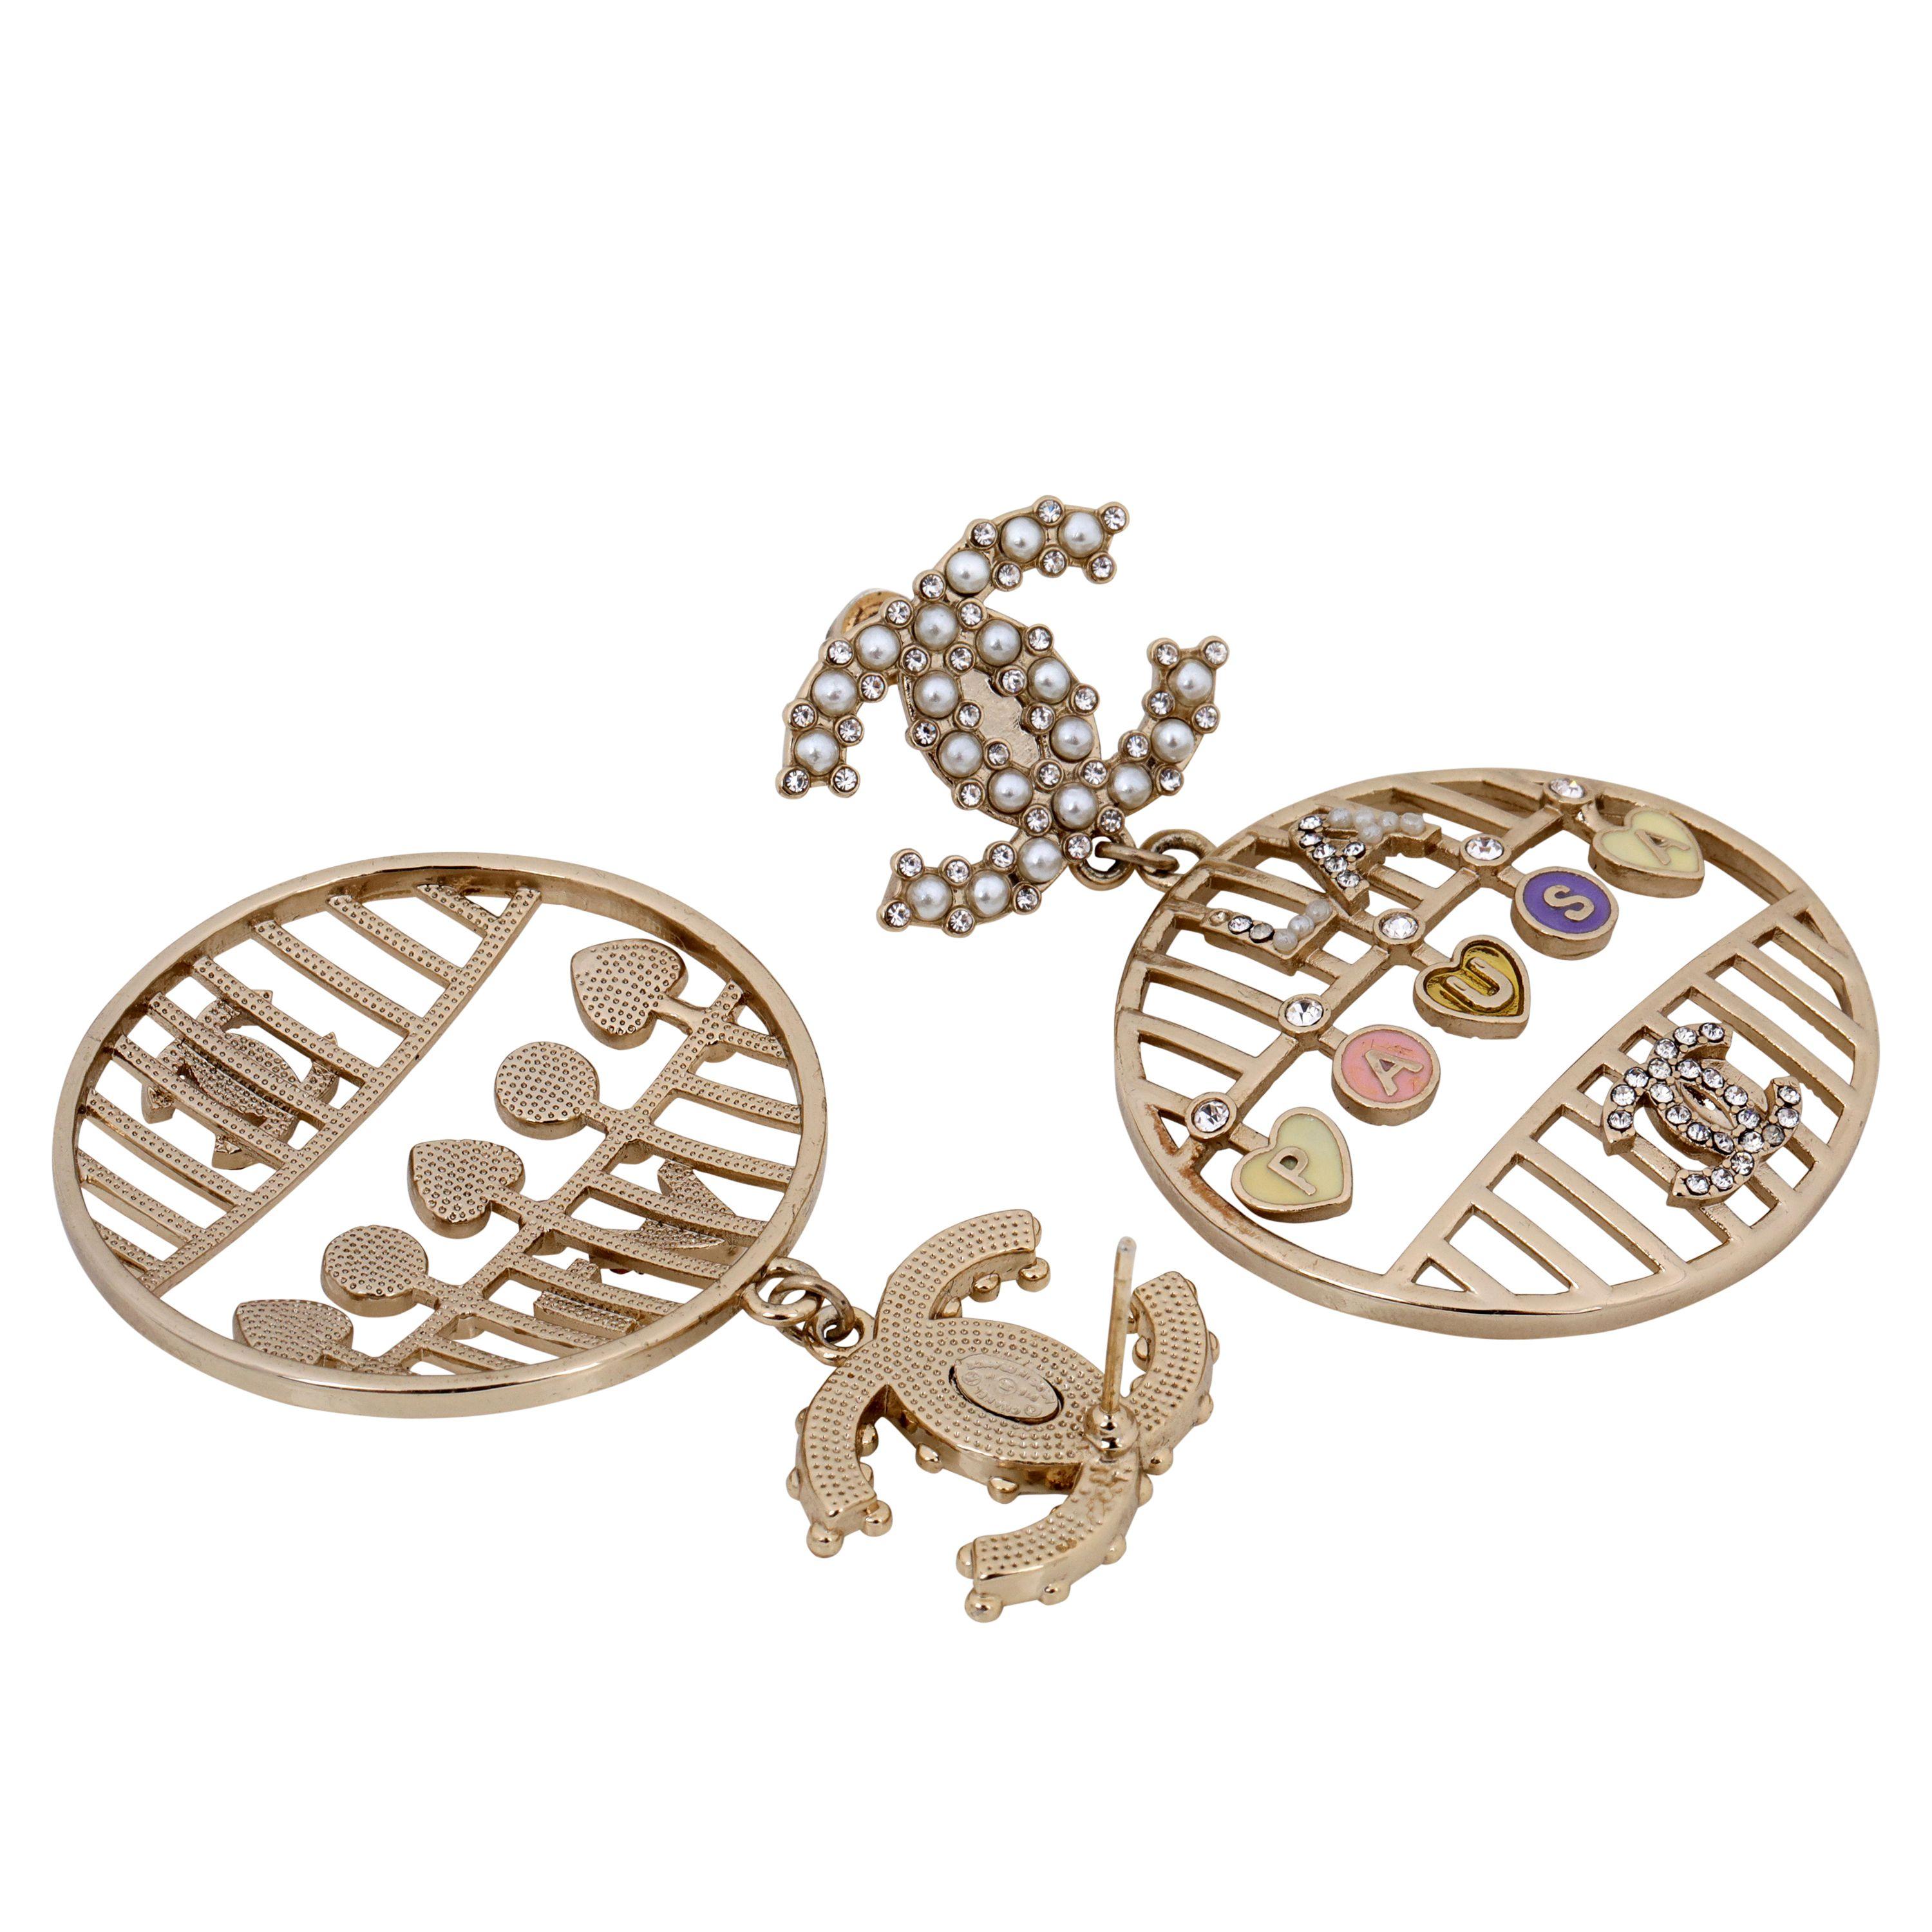 Ces authentiques boucles d'oreilles Chanel en perles LA PAUSA CC sont en excellent état et datent des années 1980.    Pochette ou boîte incluse.

PBF 12552
 
